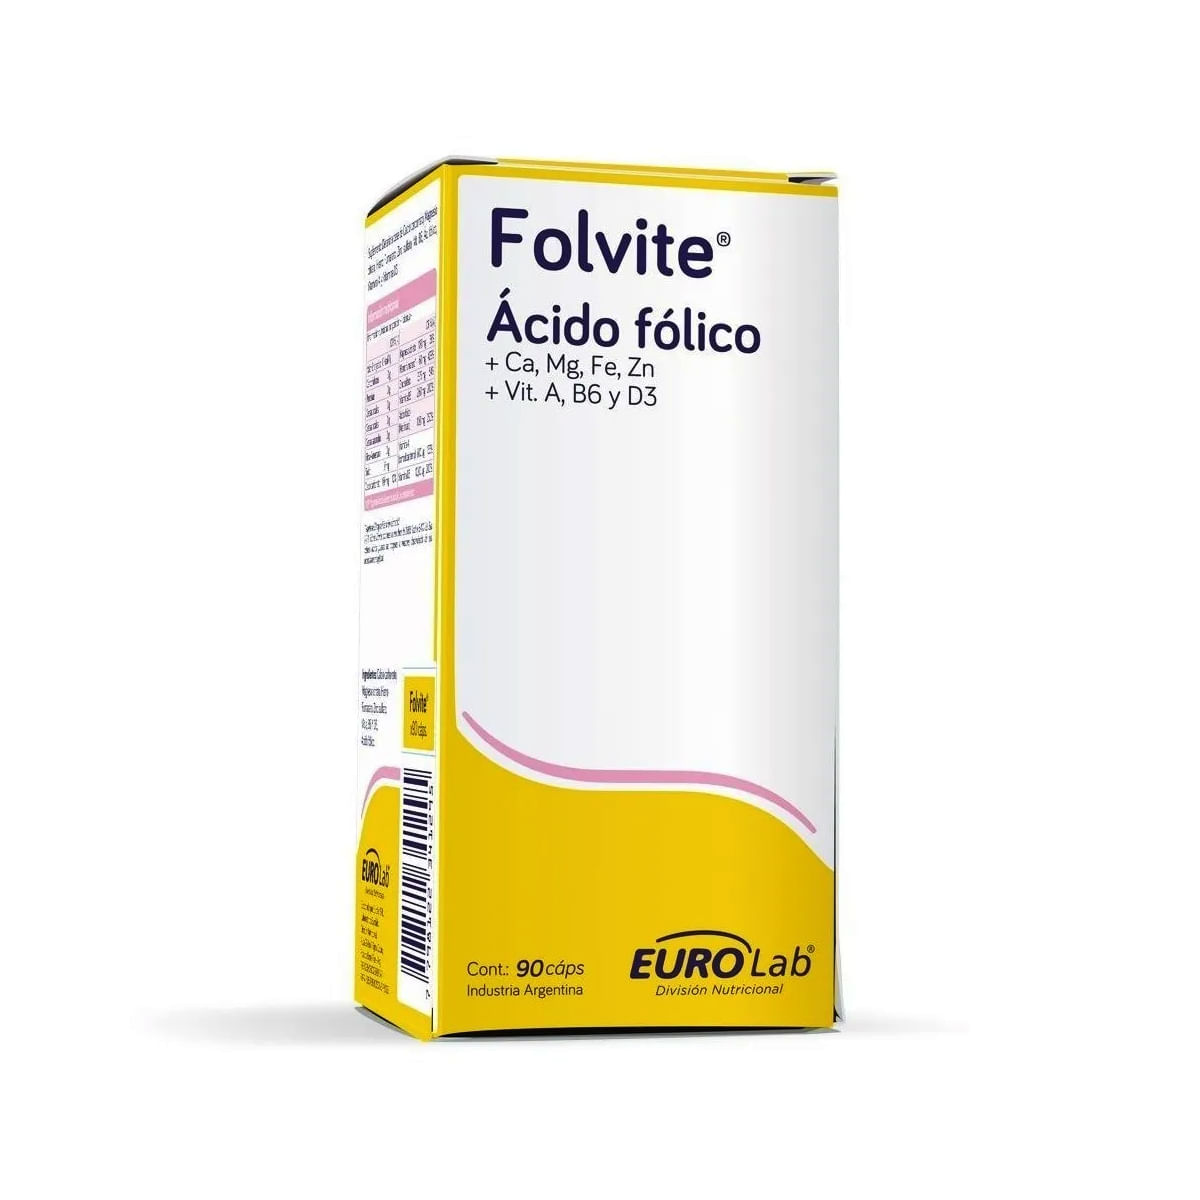 Acido Folico 1 mg x 30 Comprimidos